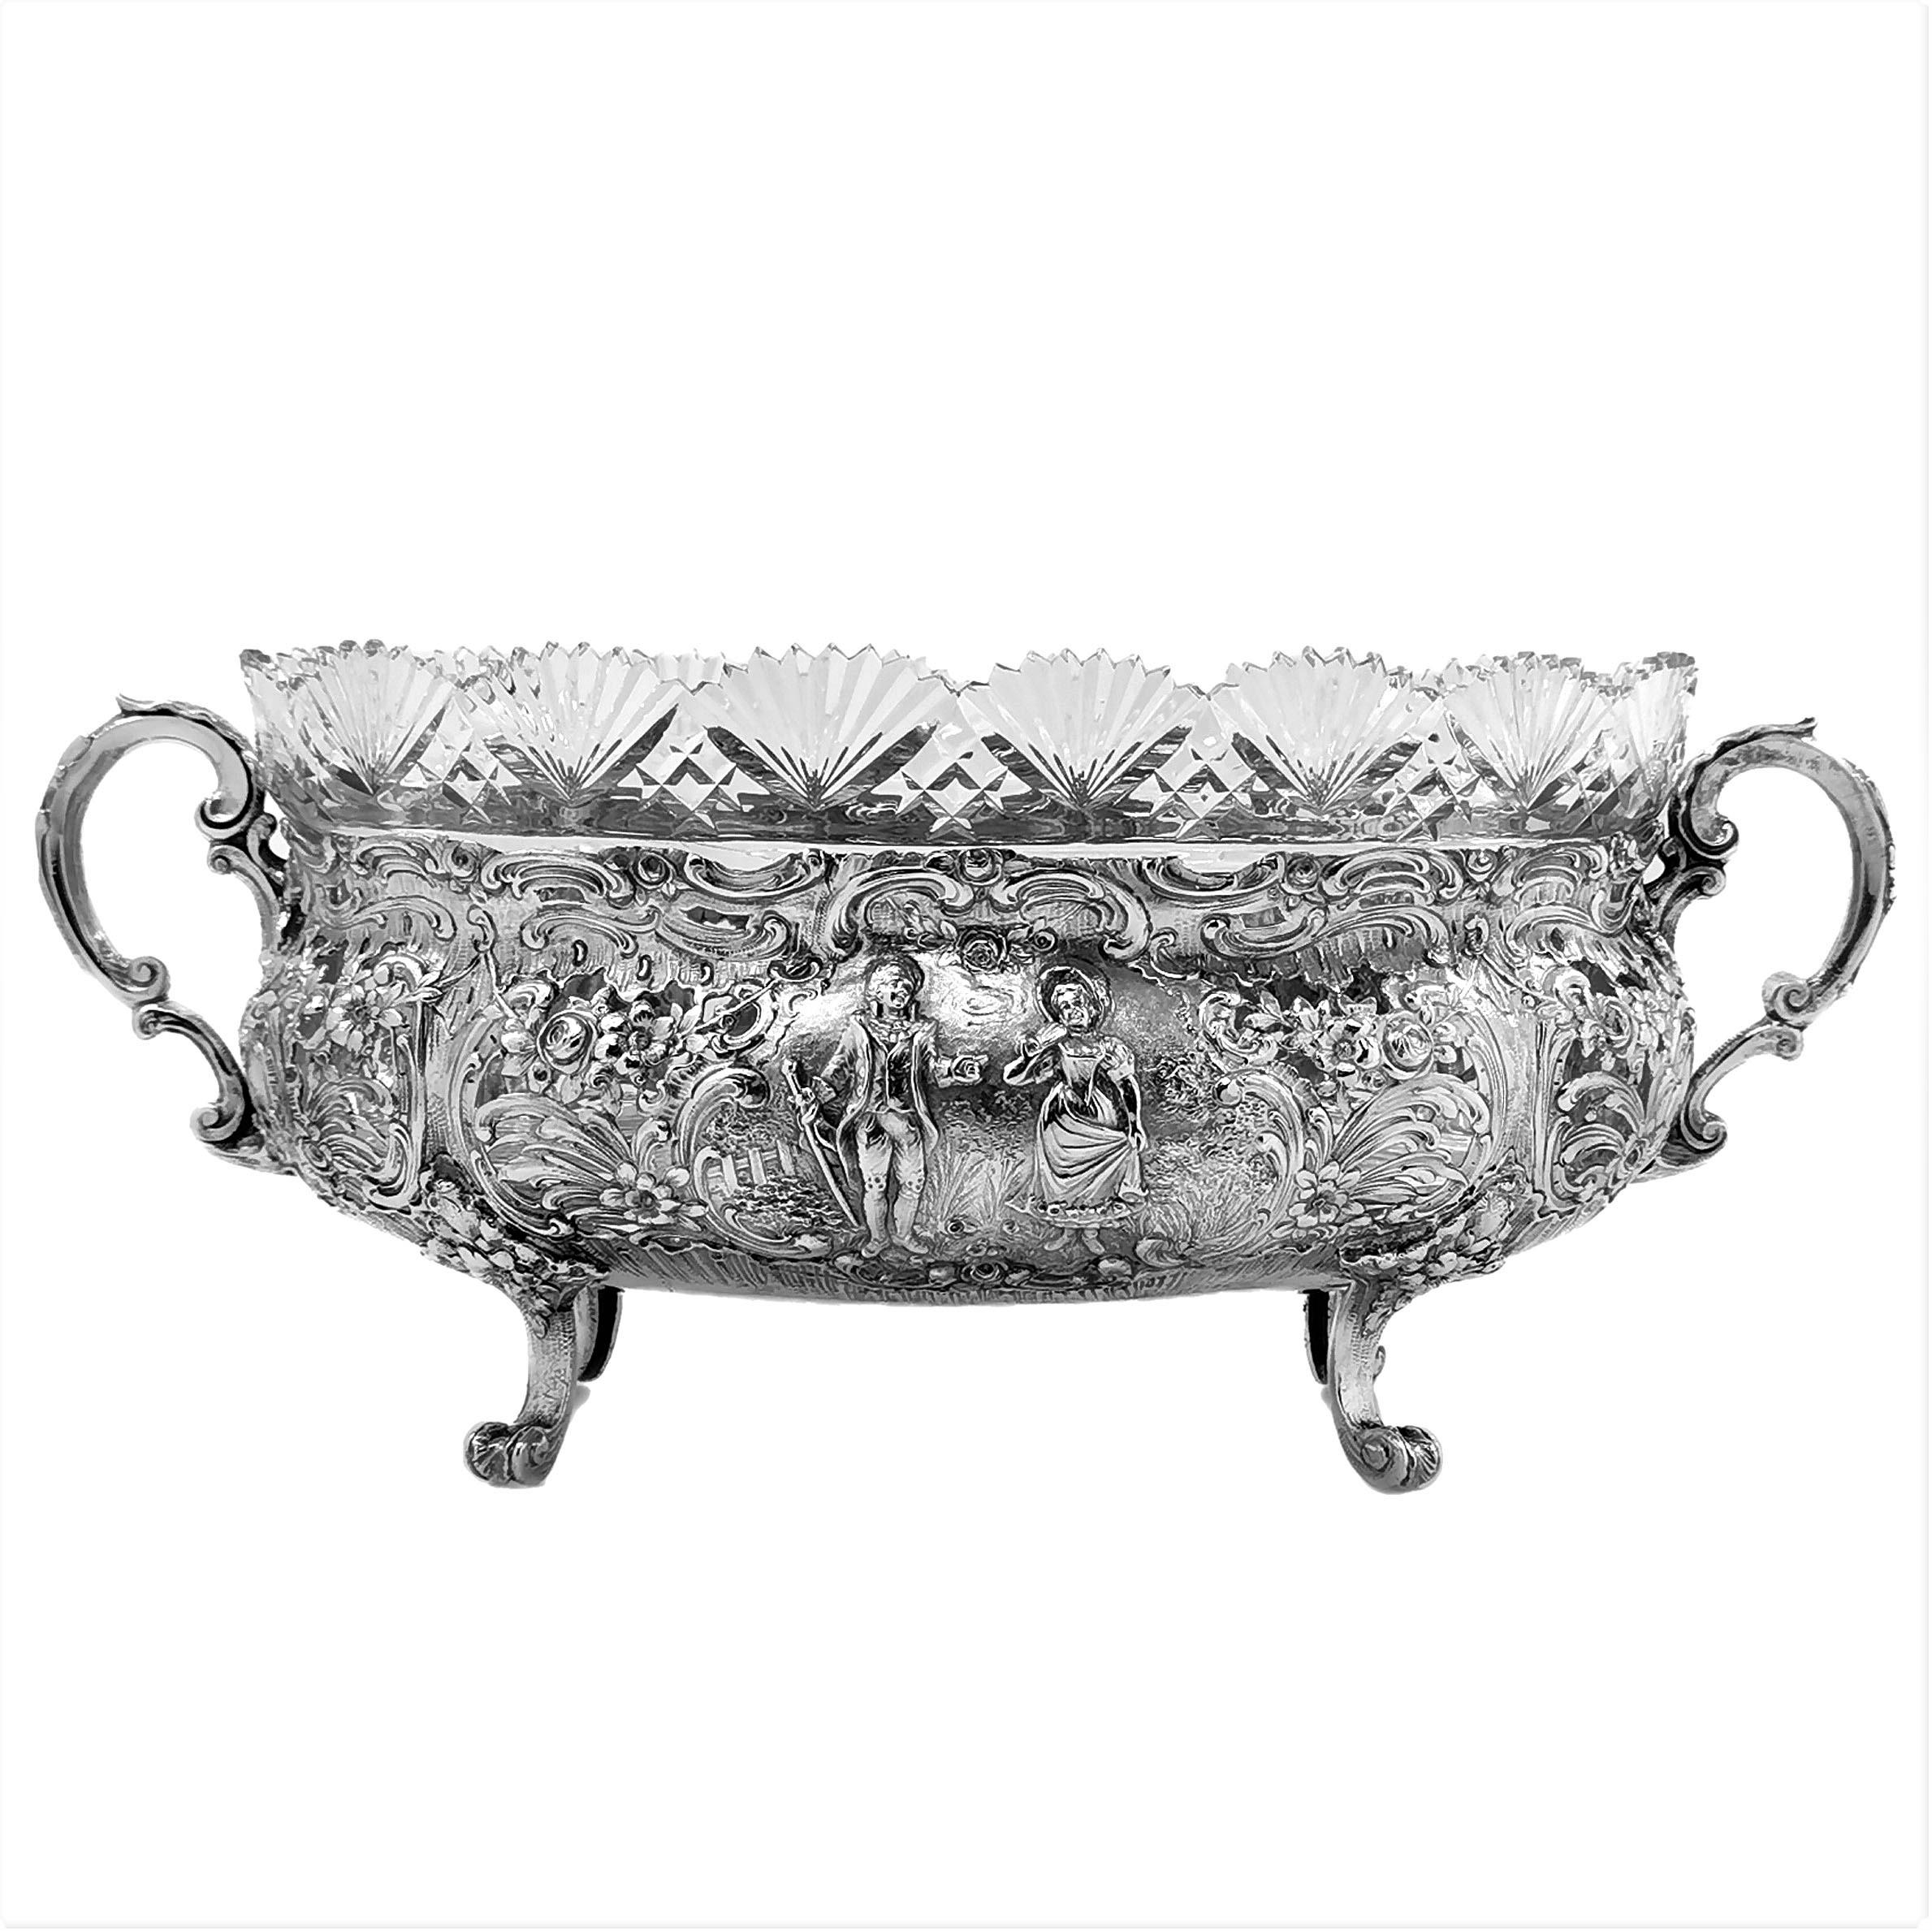 European Antique German Solid Silver & Glass Dish / Bowl / Jardinière, c. 1900